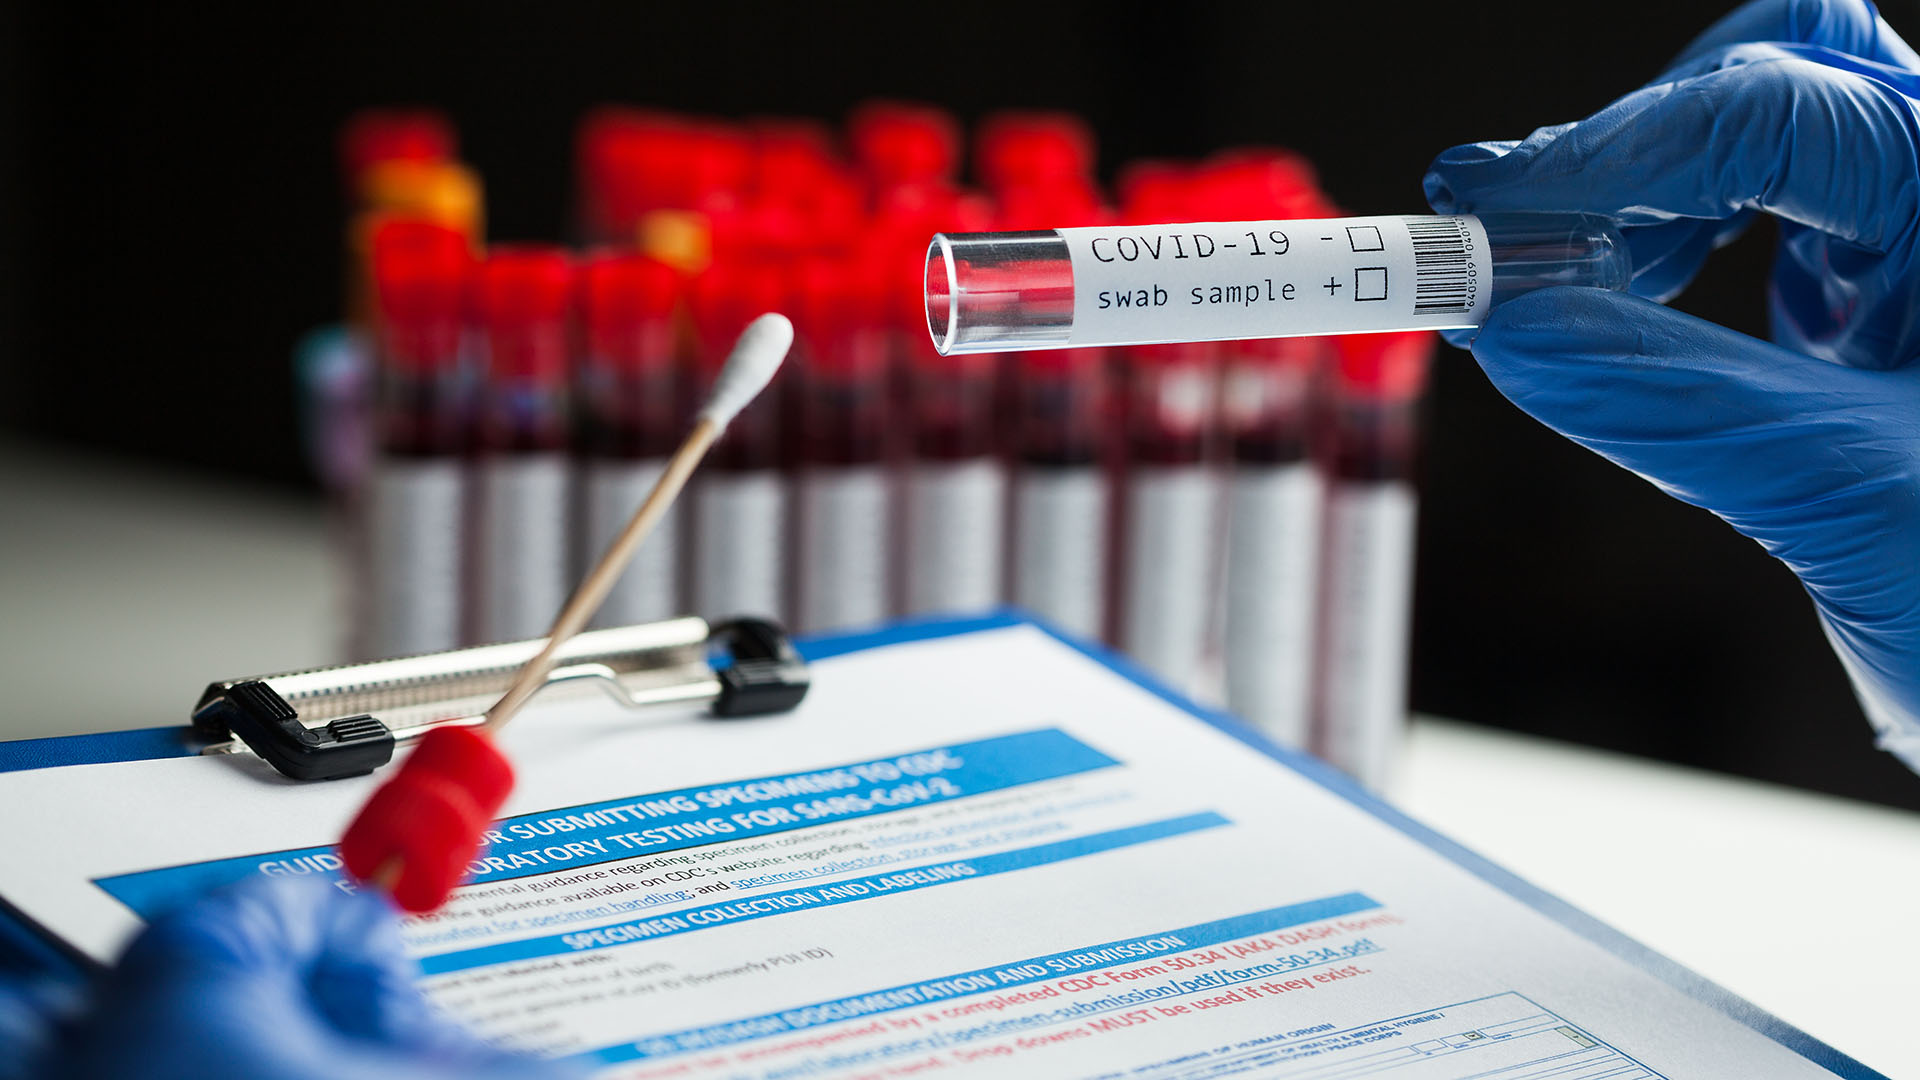 Las pruebas de diagnóstico se dividen en dos categorías principales: pruebas moleculares que detectan el ARN viral y pruebas serológicas que detectan inmunoglobulinas anti-SARS-CoV-2 (Shutterstock)